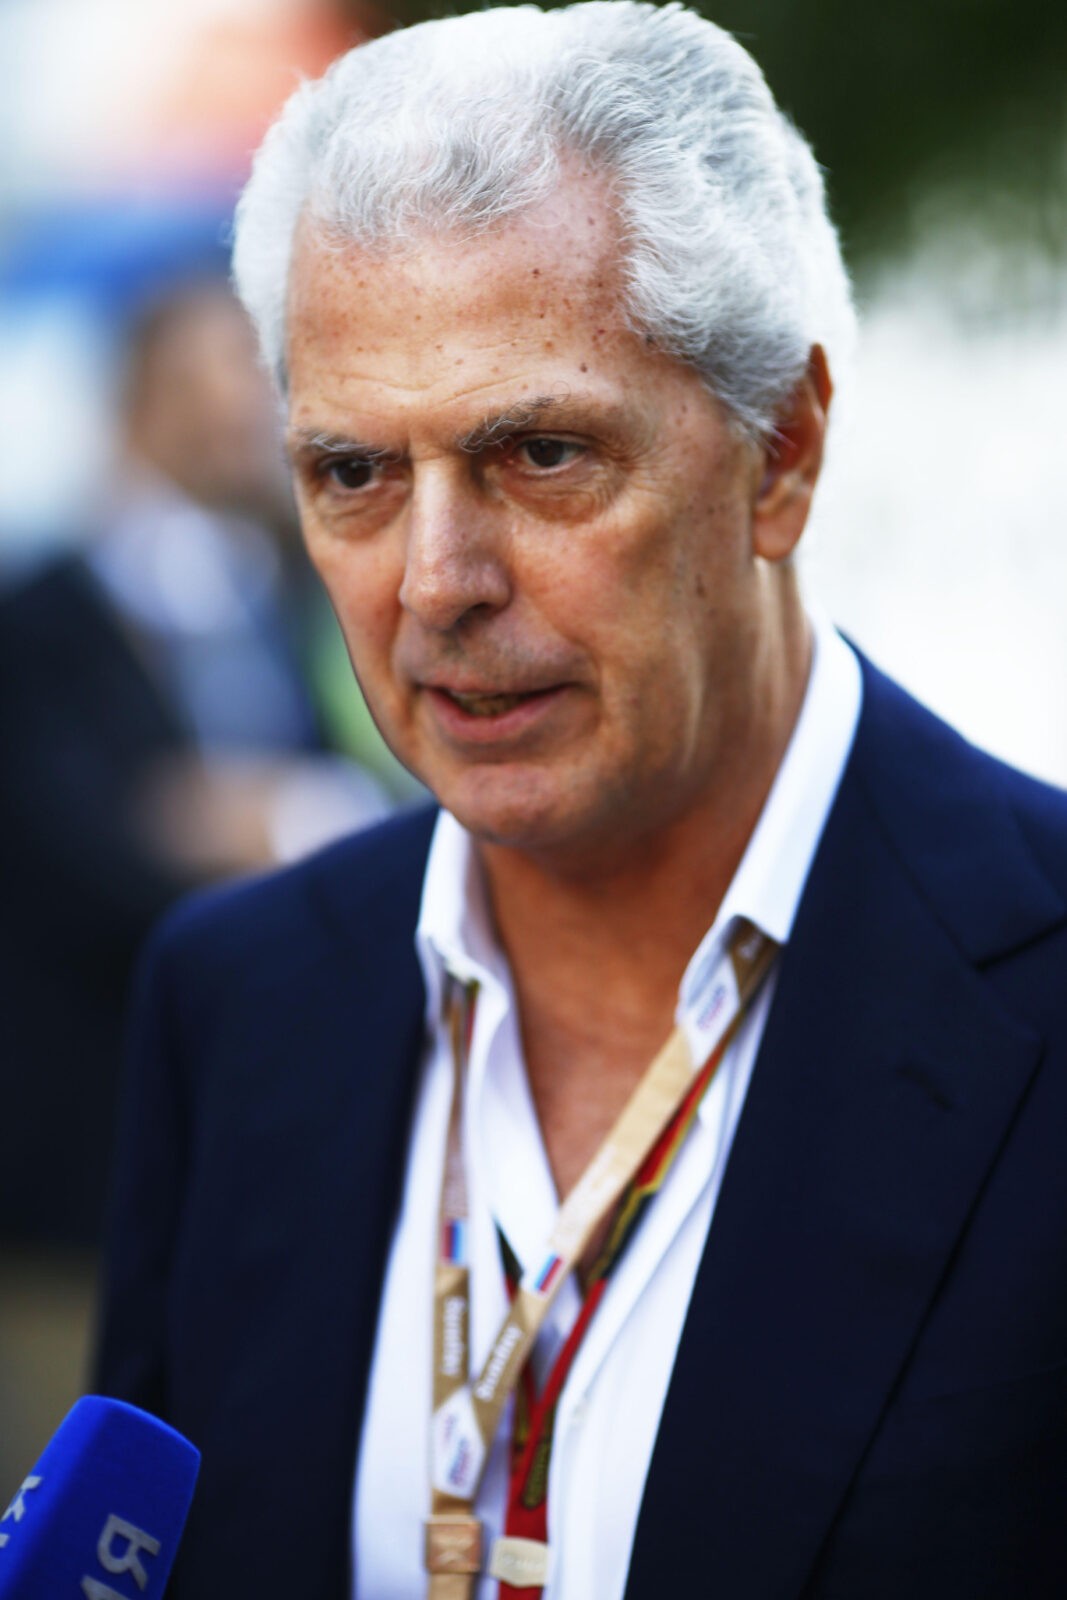 MTP lascia la Pirelli nel 2020 uno sguardo alla storia del piu' grande conglomerato italiano di penumatici